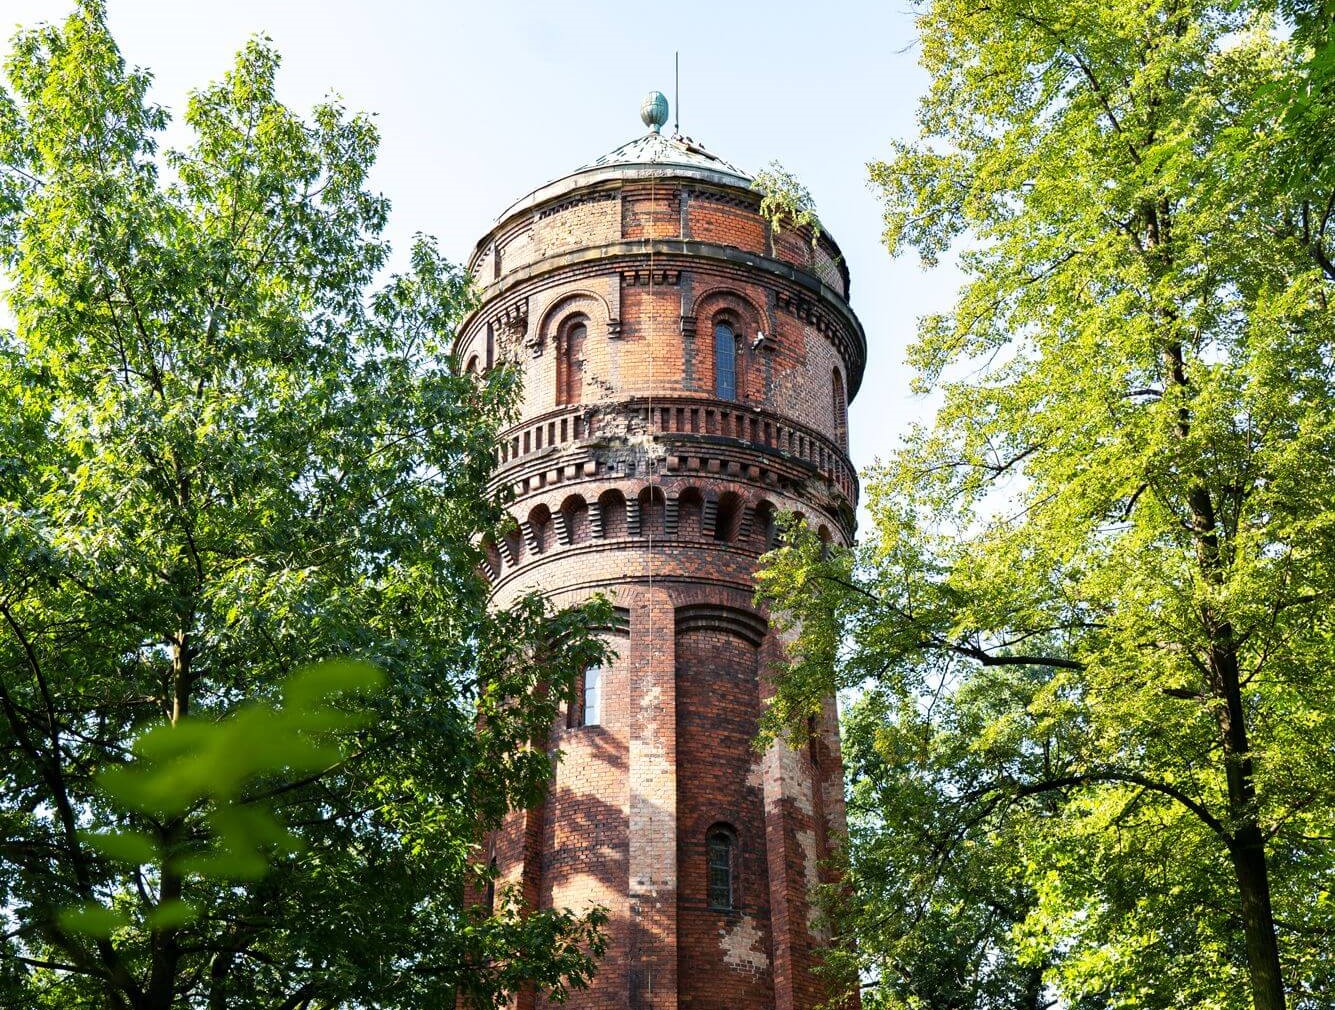 Charakterystyczna wieża to jeden z symboli dzielnicy Północ. Zdj. M.Koczy